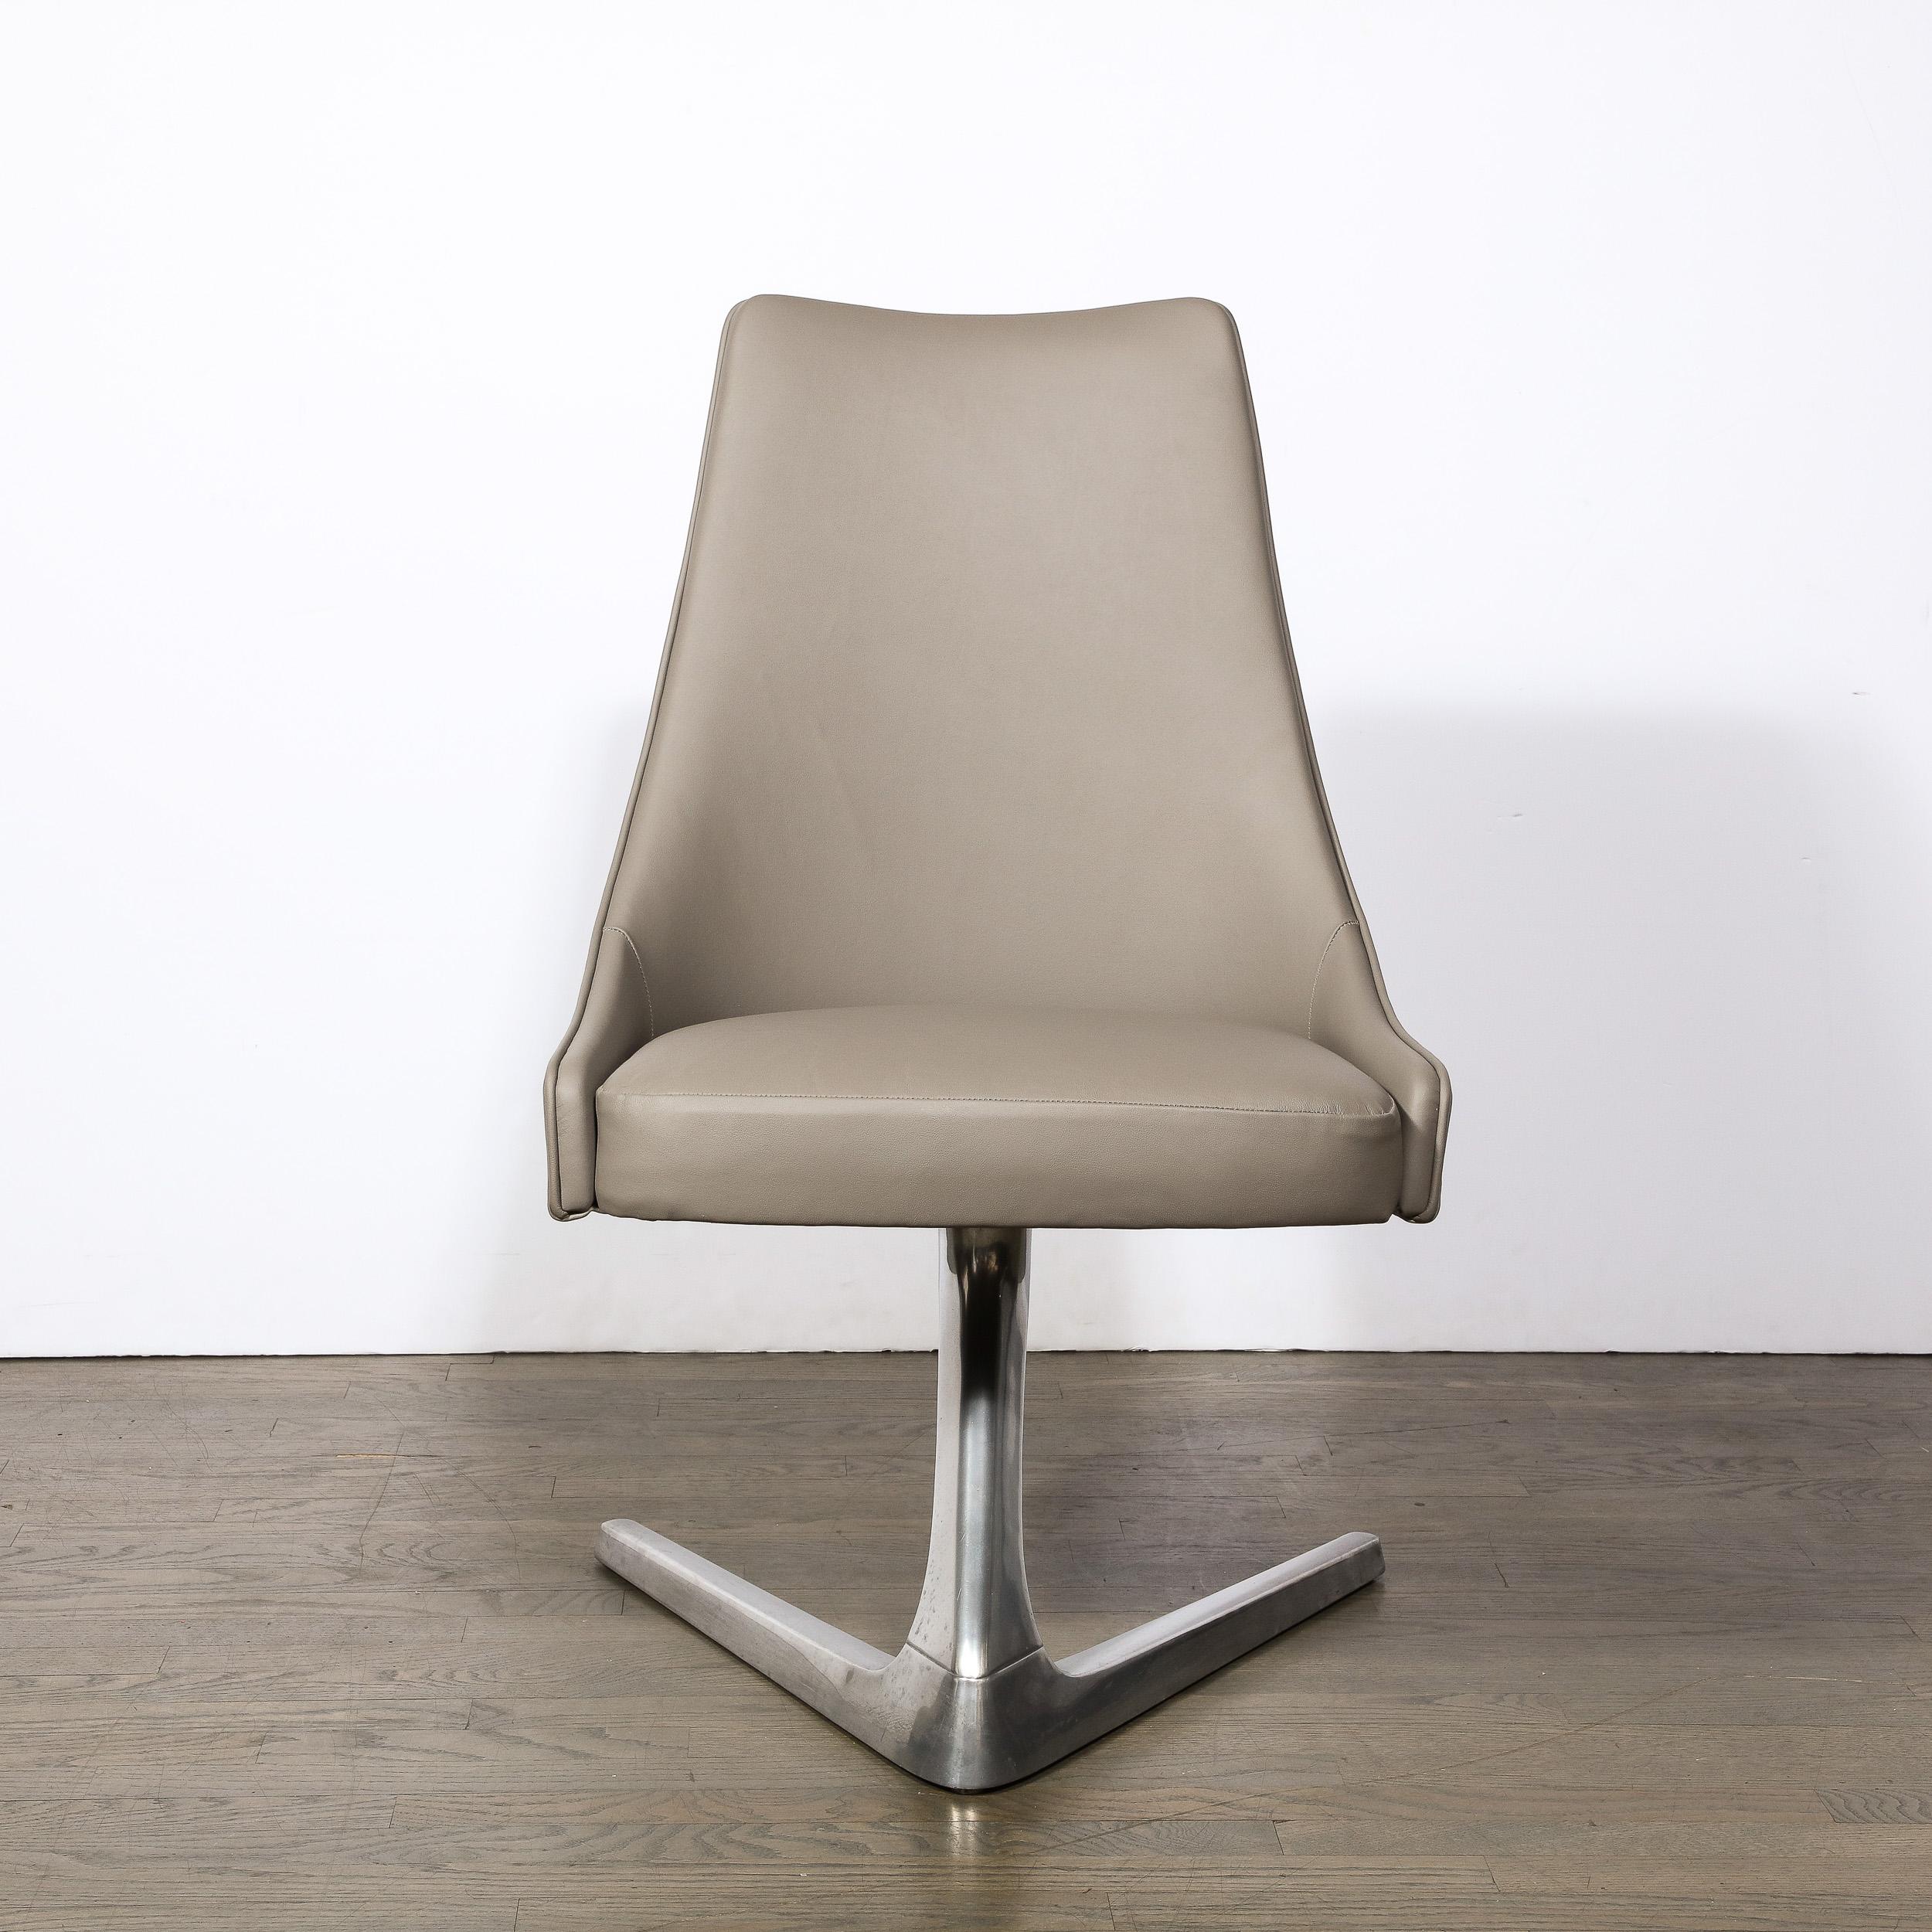 Cette iconique et saisissante chaise moderniste Sculpta 